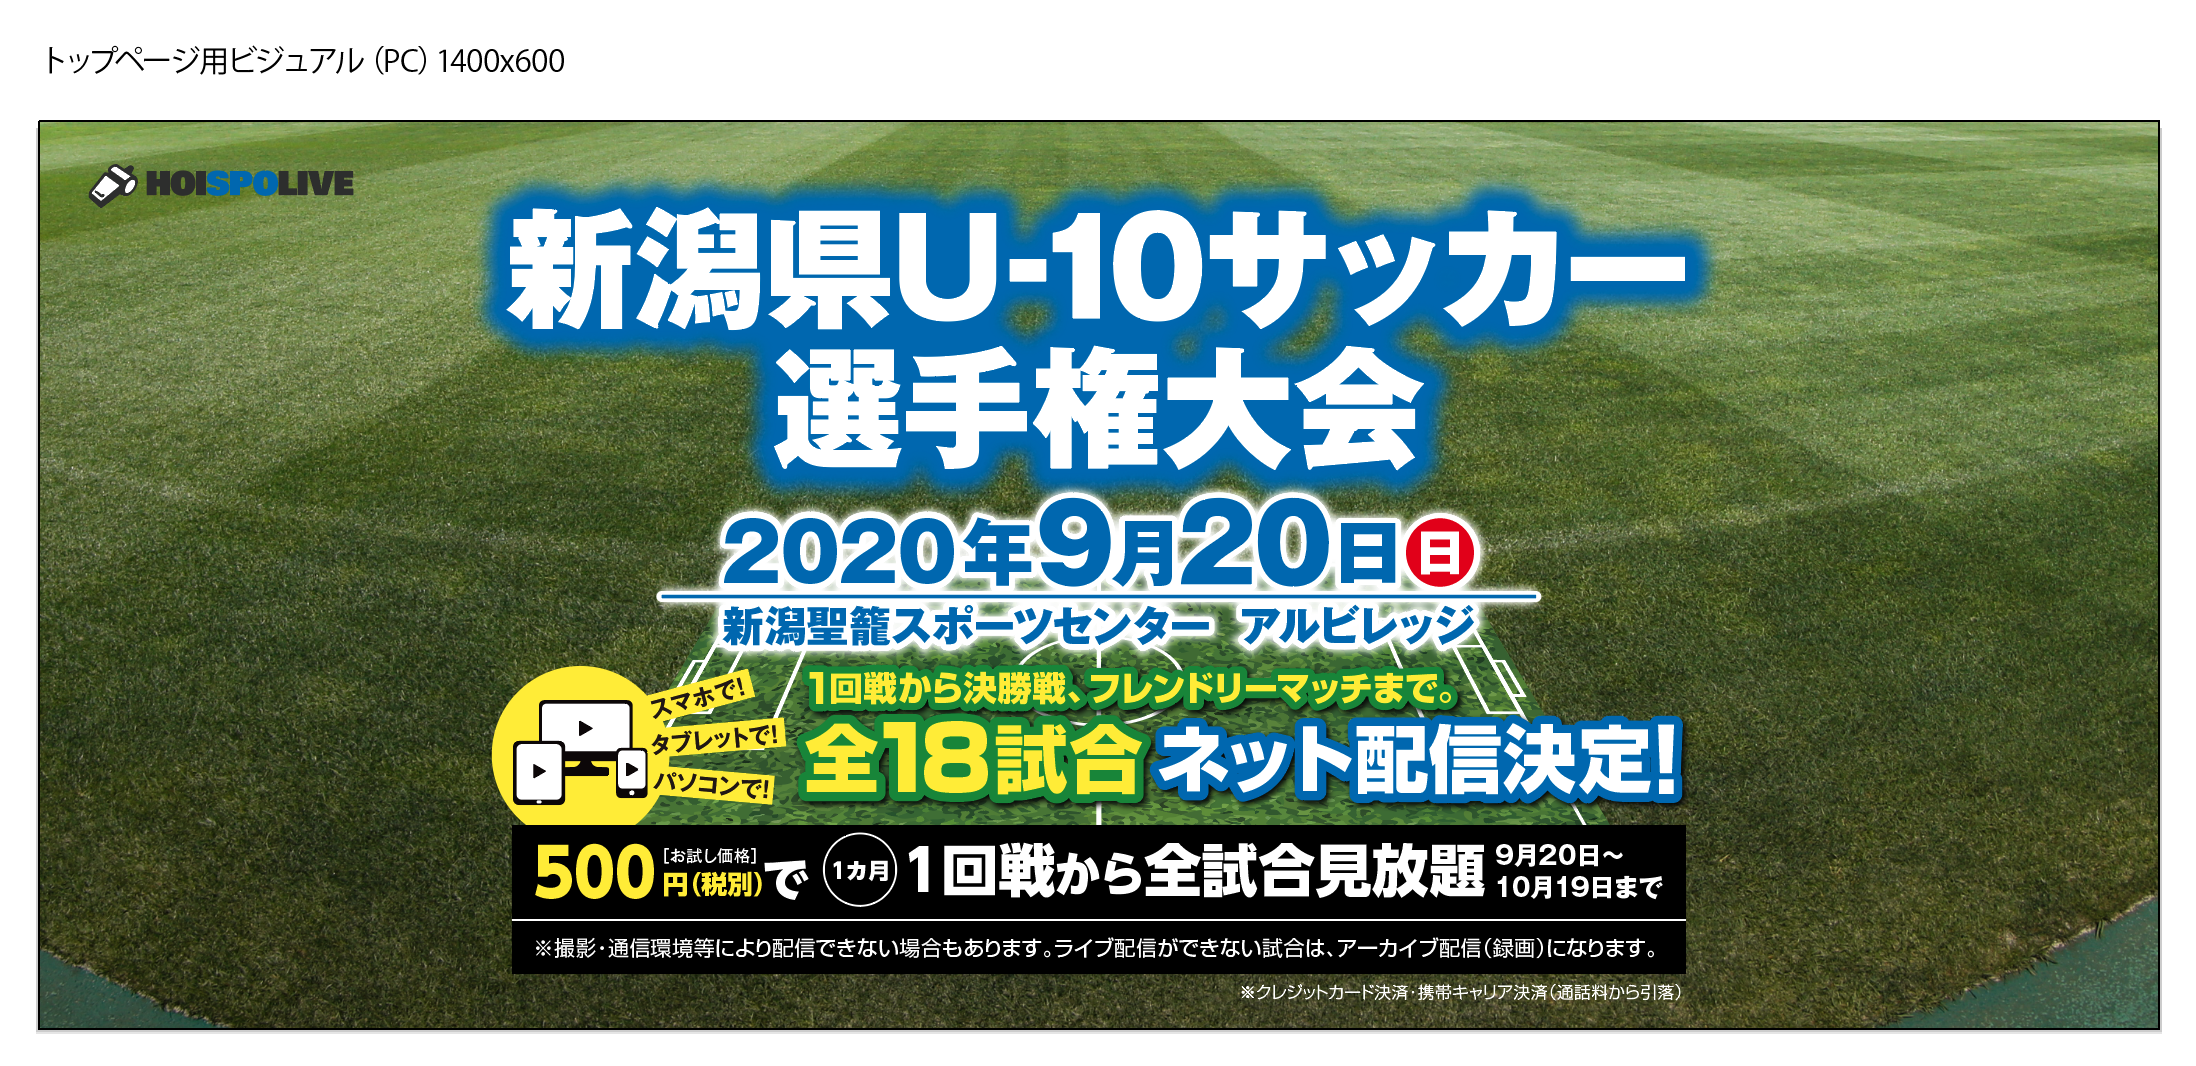 9 新潟県初 新潟県u 10サッカー選手権大会 全18試合をライブネット配信 Hoispo ホイスポ のプレスリリース